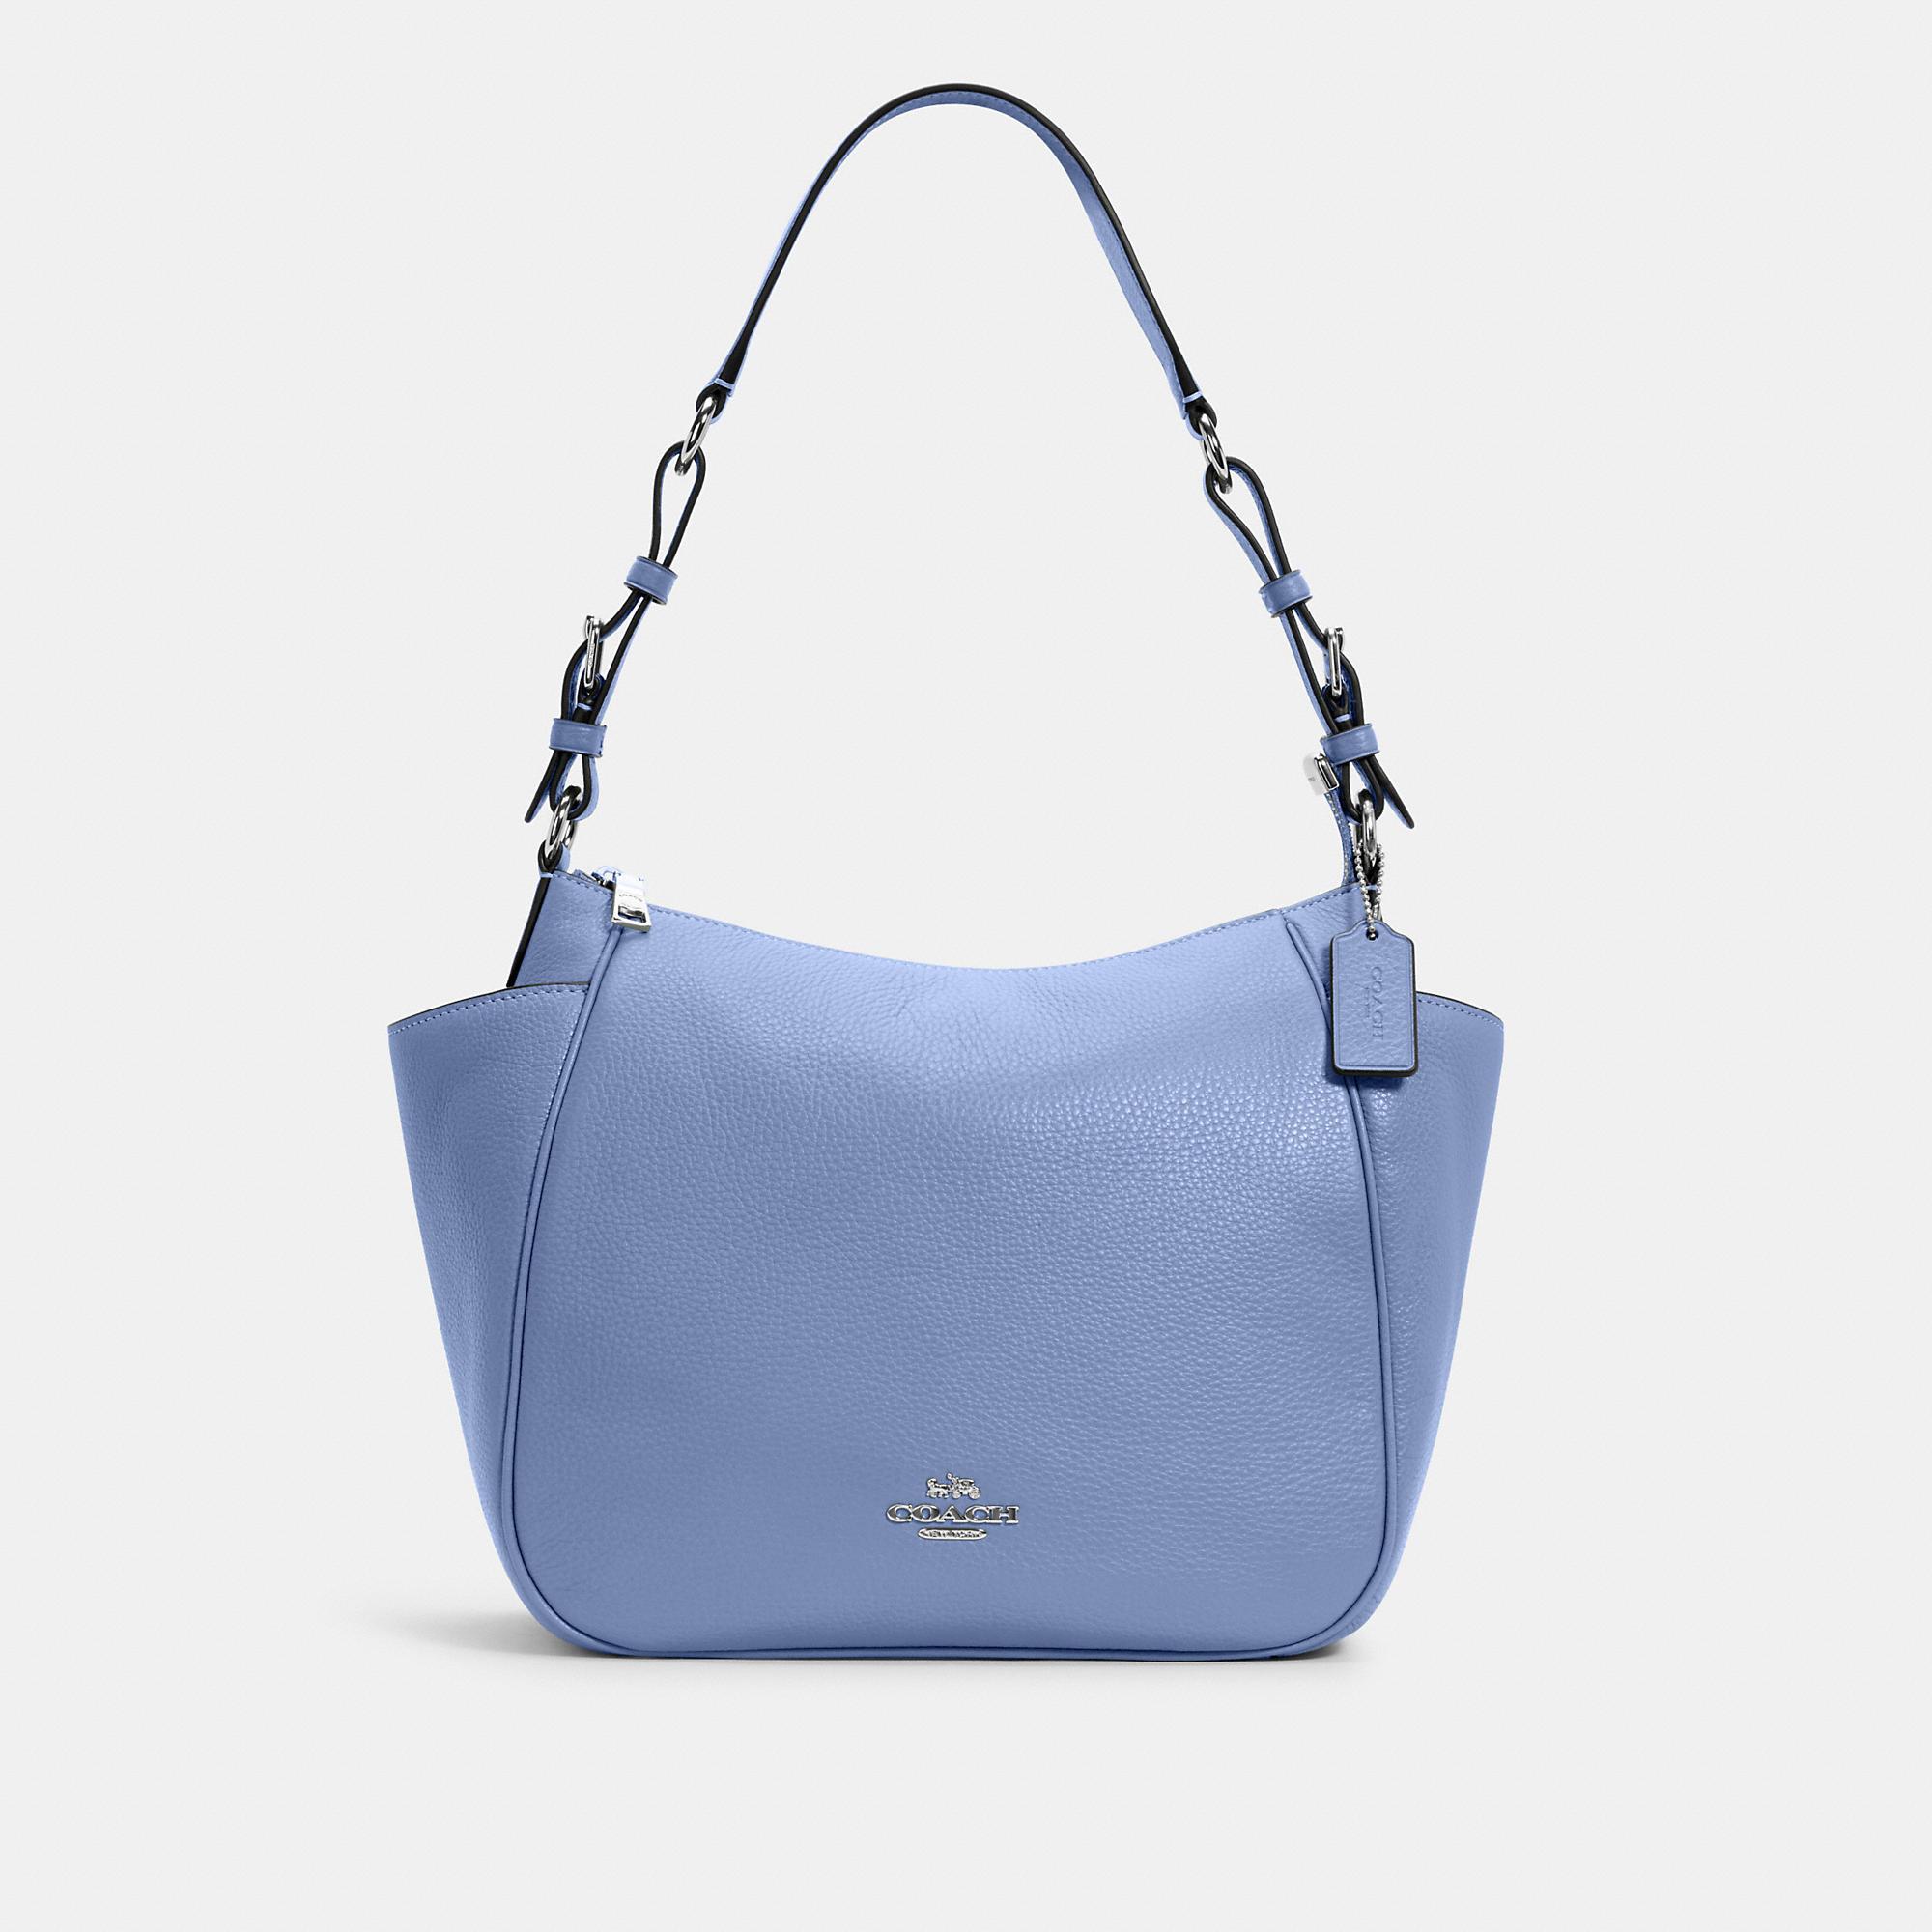 Total 60+ imagen coach blue leather purse